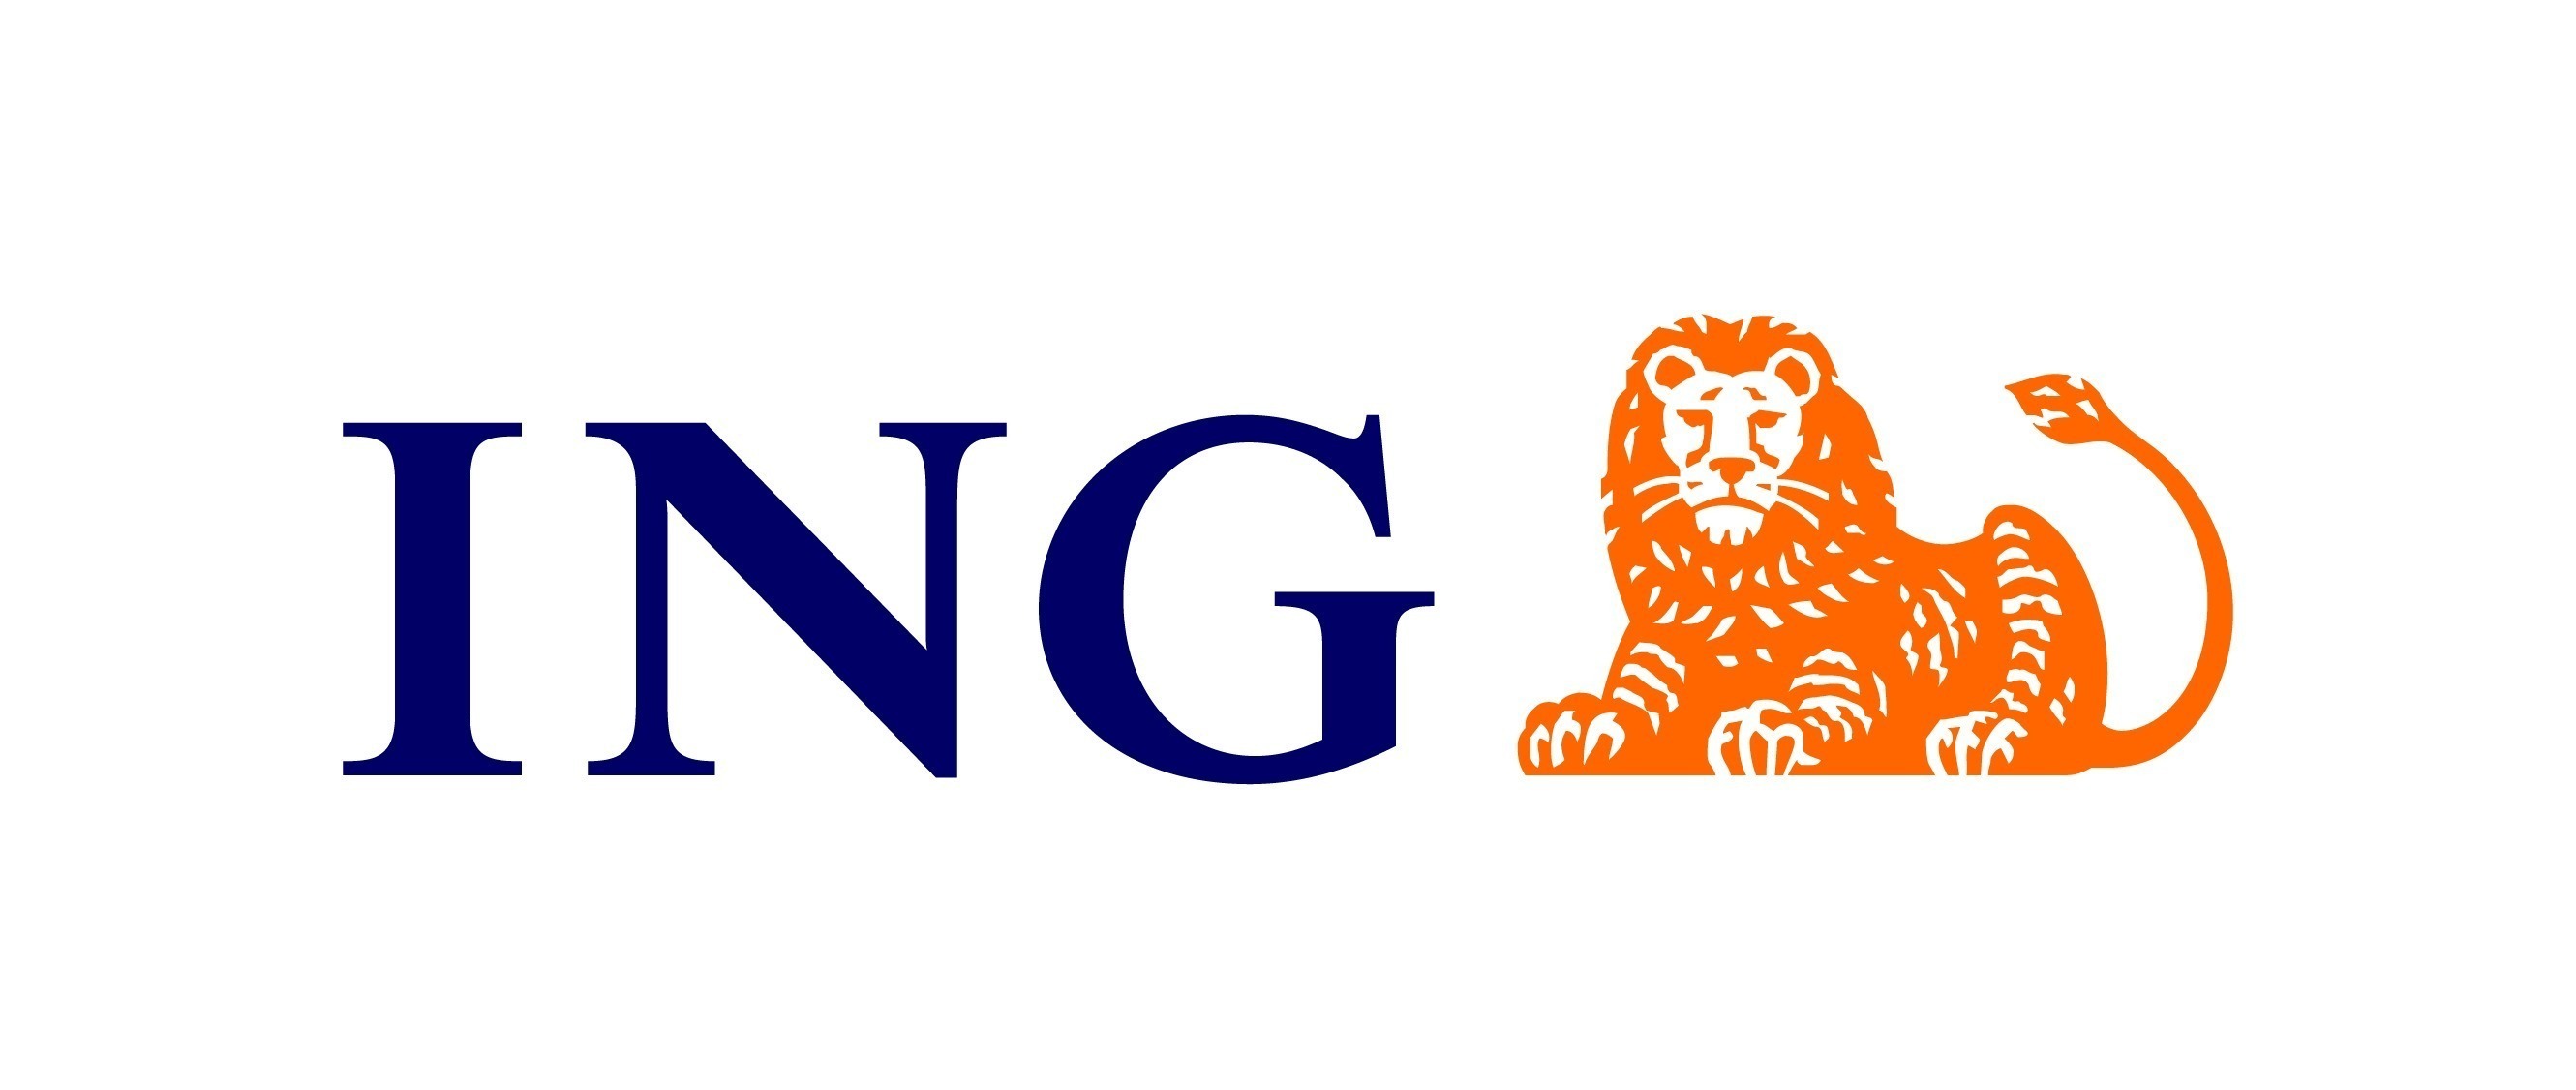 ING logo scaled